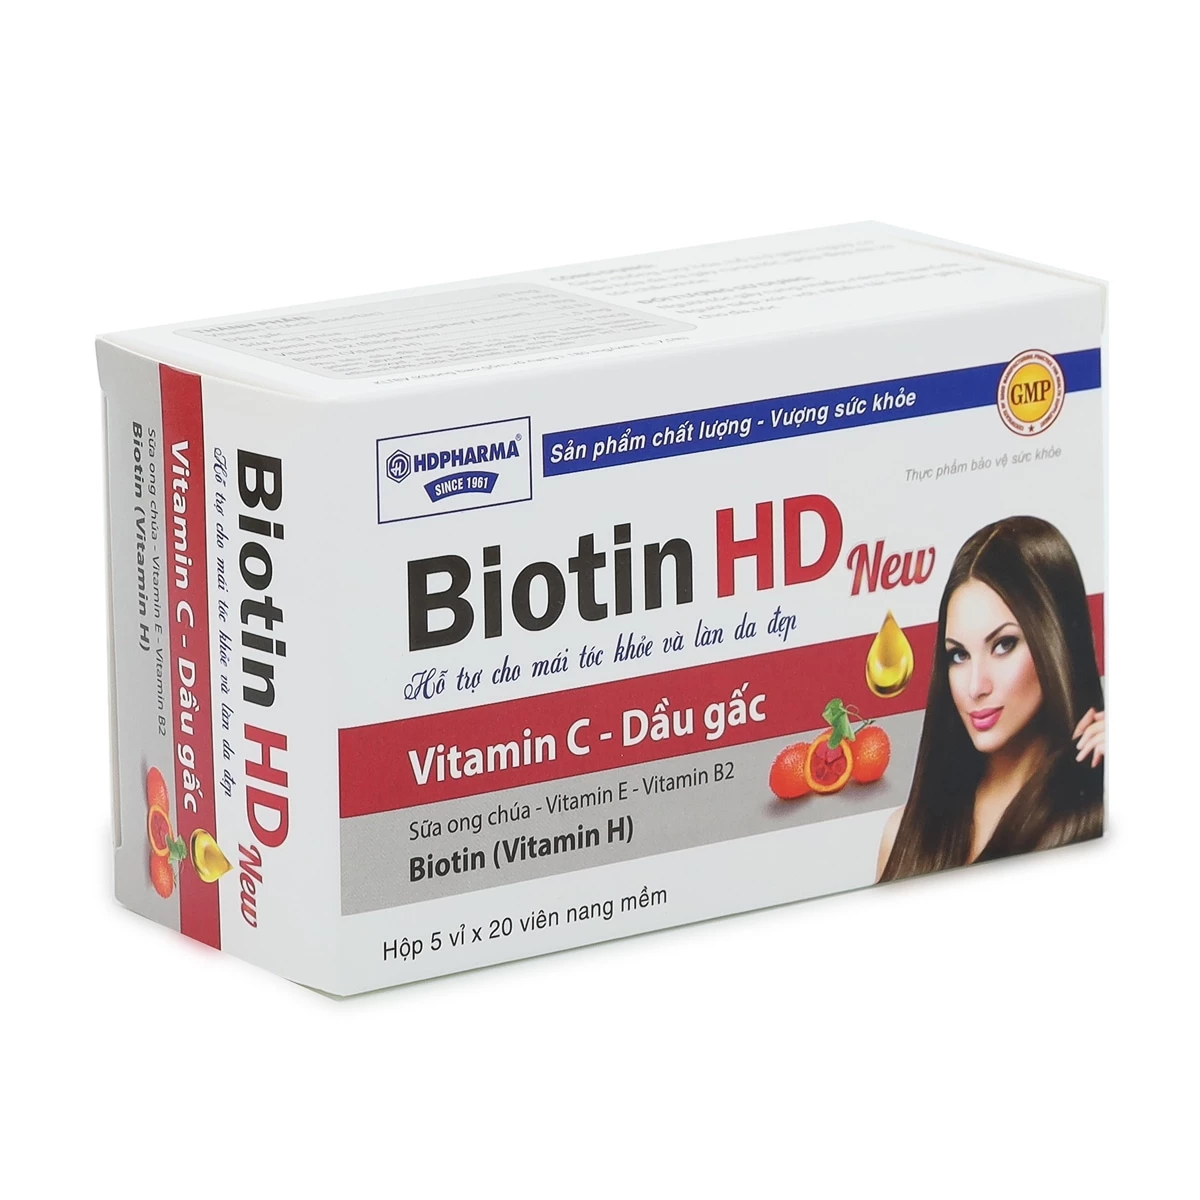 Biotin HD - Hỗ trợ giảm gãy rụng tóc, làm đẹp da